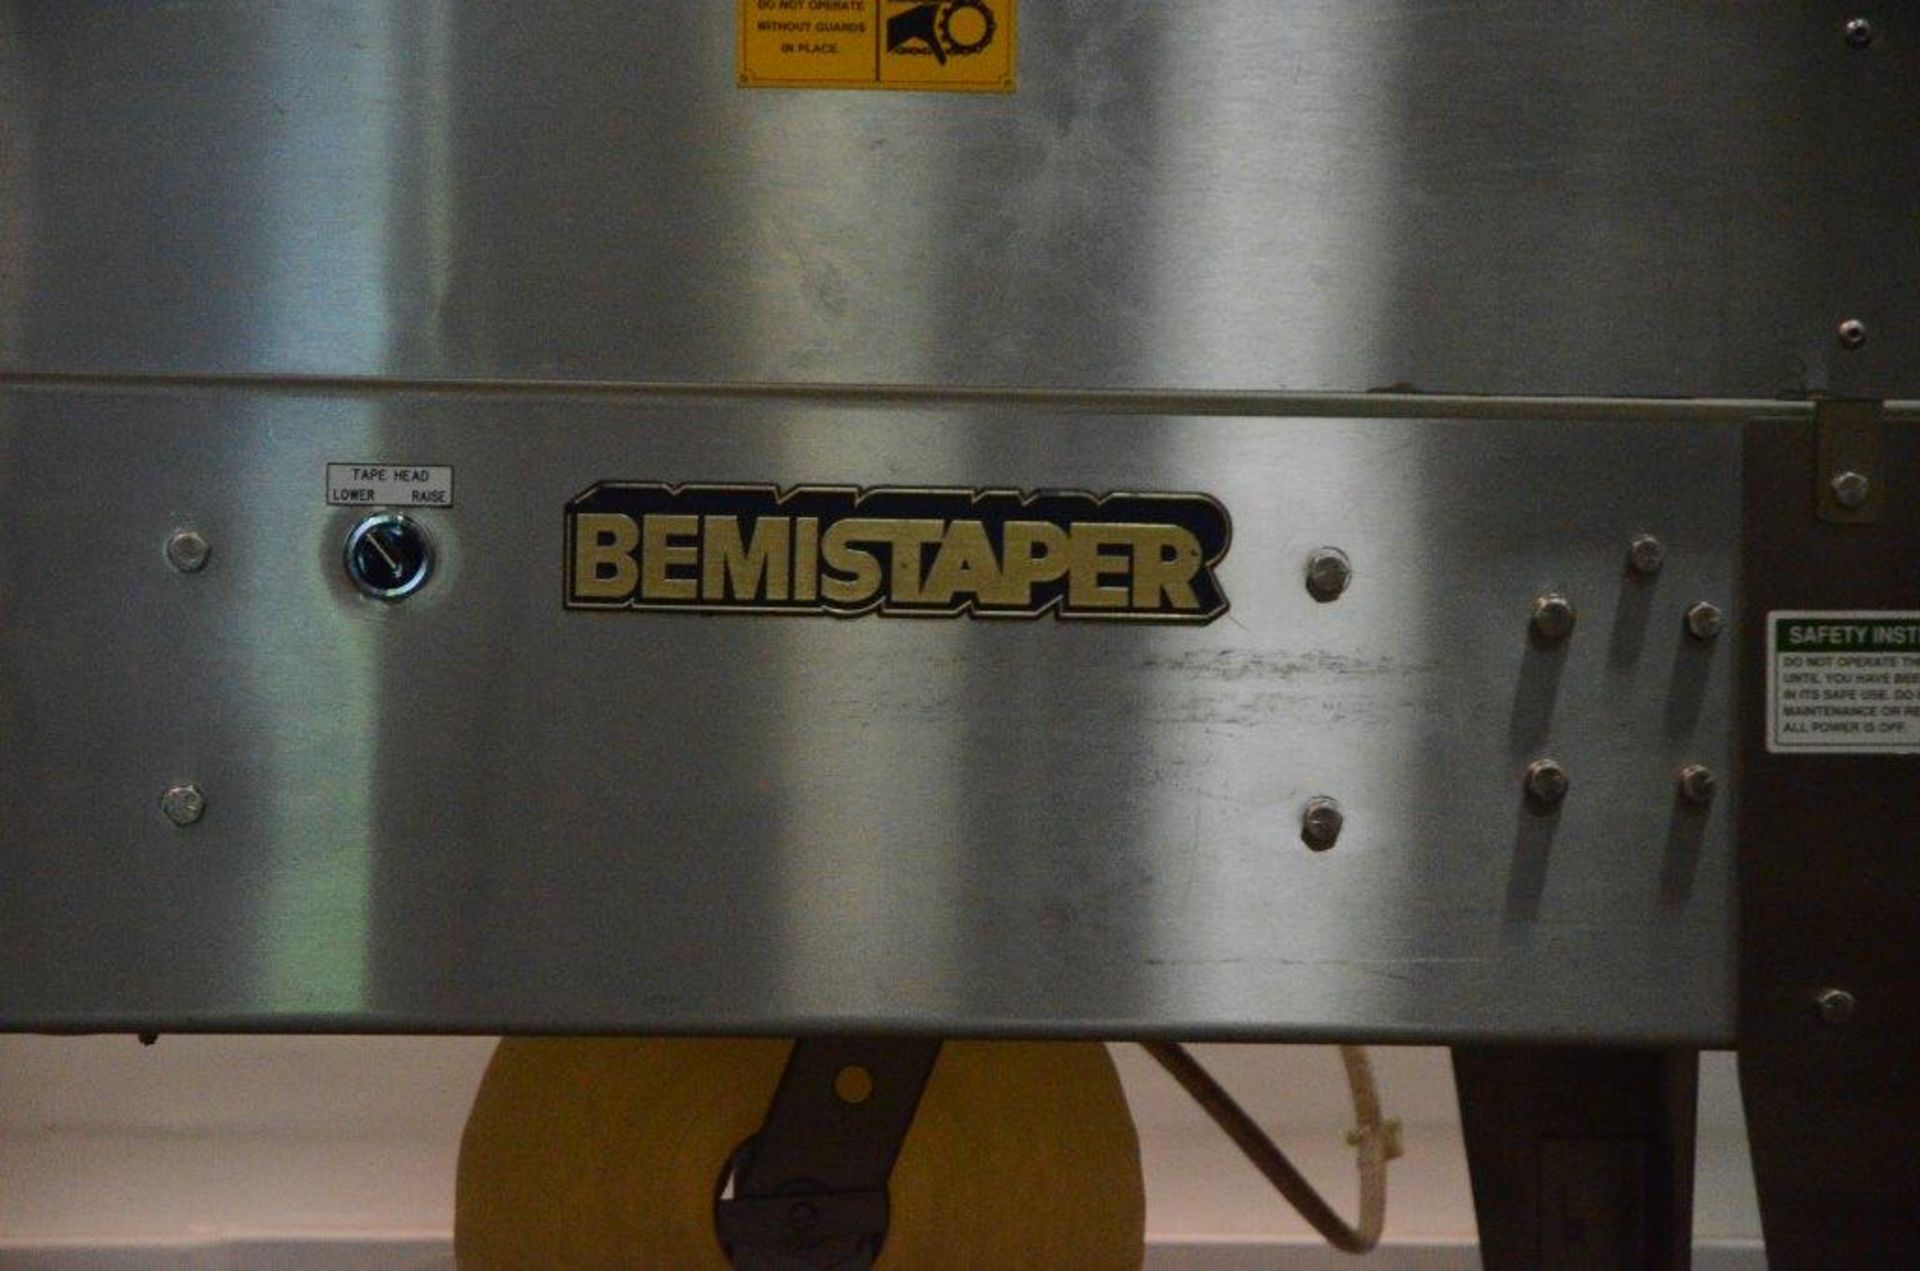 Bemis Taper Case Sealer - Image 3 of 5